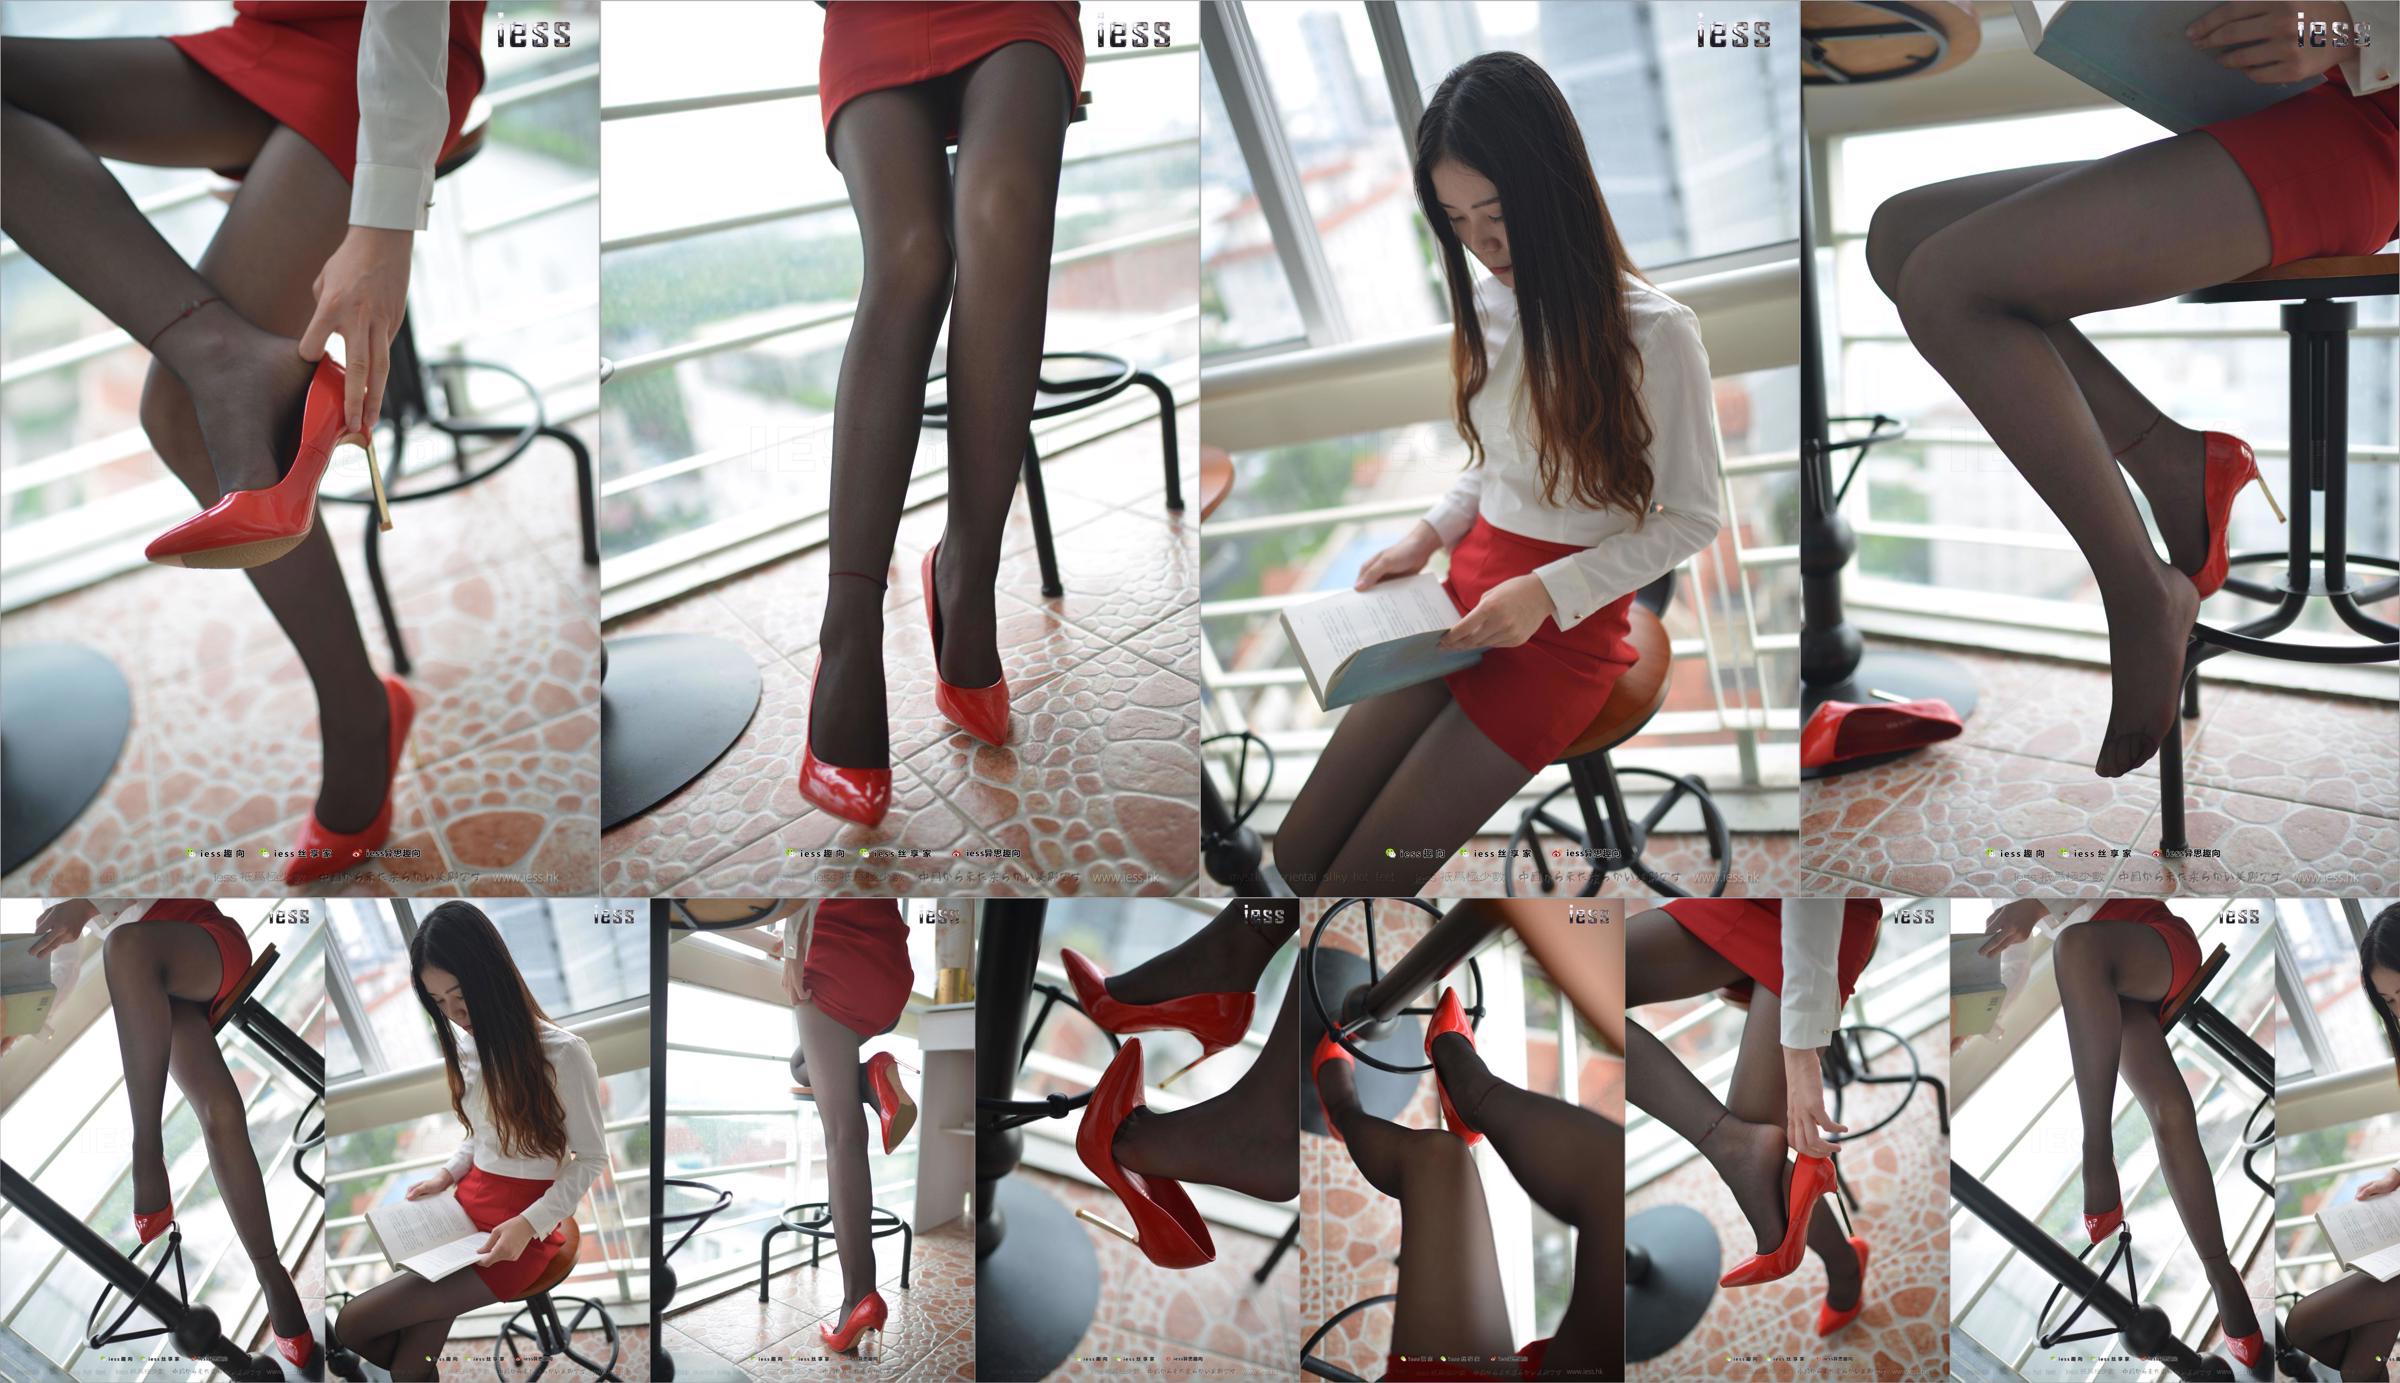 Silk Foot Bento 147 Concubine "Красный высокий, черный шелк и красное платье" [IESS Weird Интересно] No.44f754 Страница 47